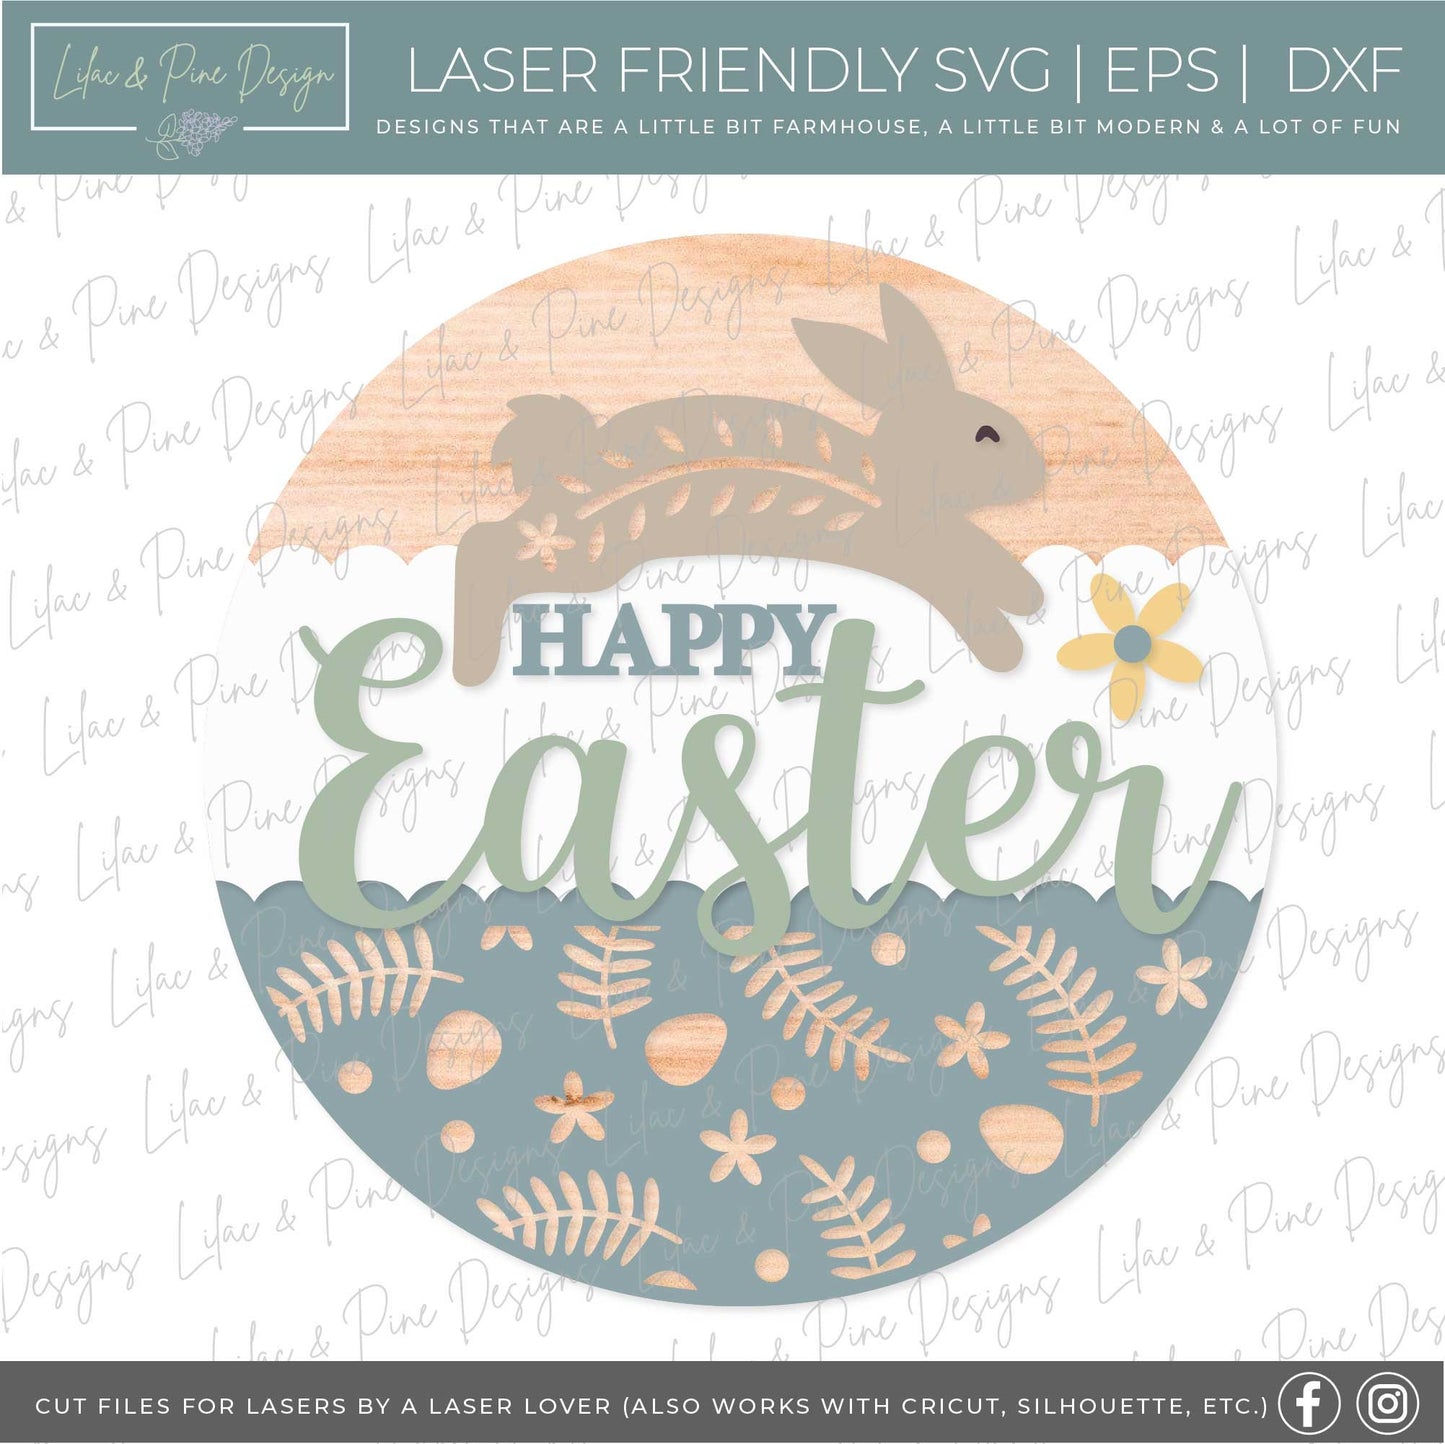 Happy Easter sign SVG, Easter door hanger, Easter Bunny Welcome sign SVG, Easter decor, Cottagecore Easter, Glowforge SVG, laser cut file